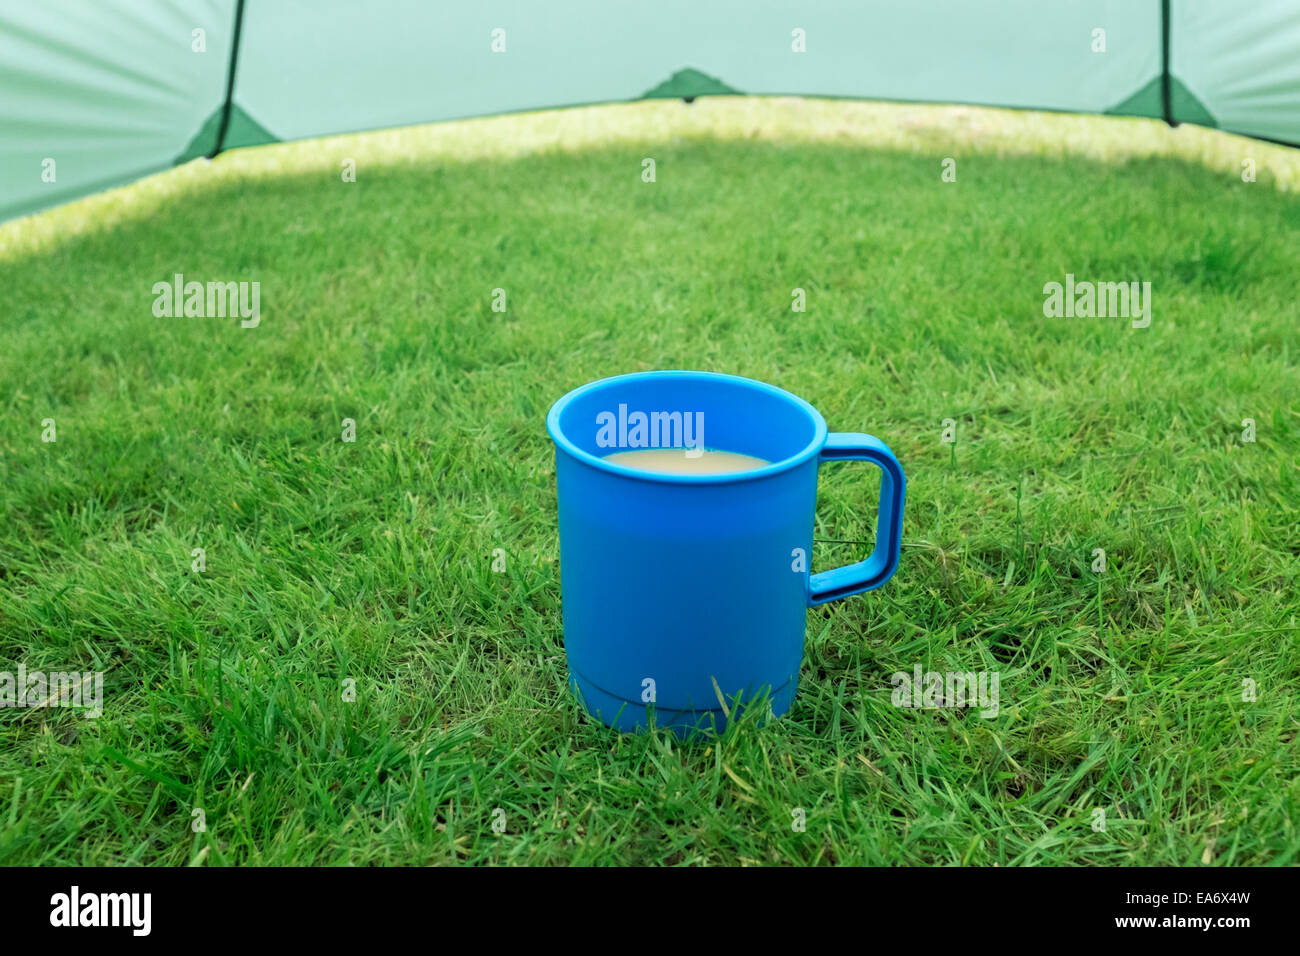 Tazza da campeggio immagini e fotografie stock ad alta risoluzione - Alamy